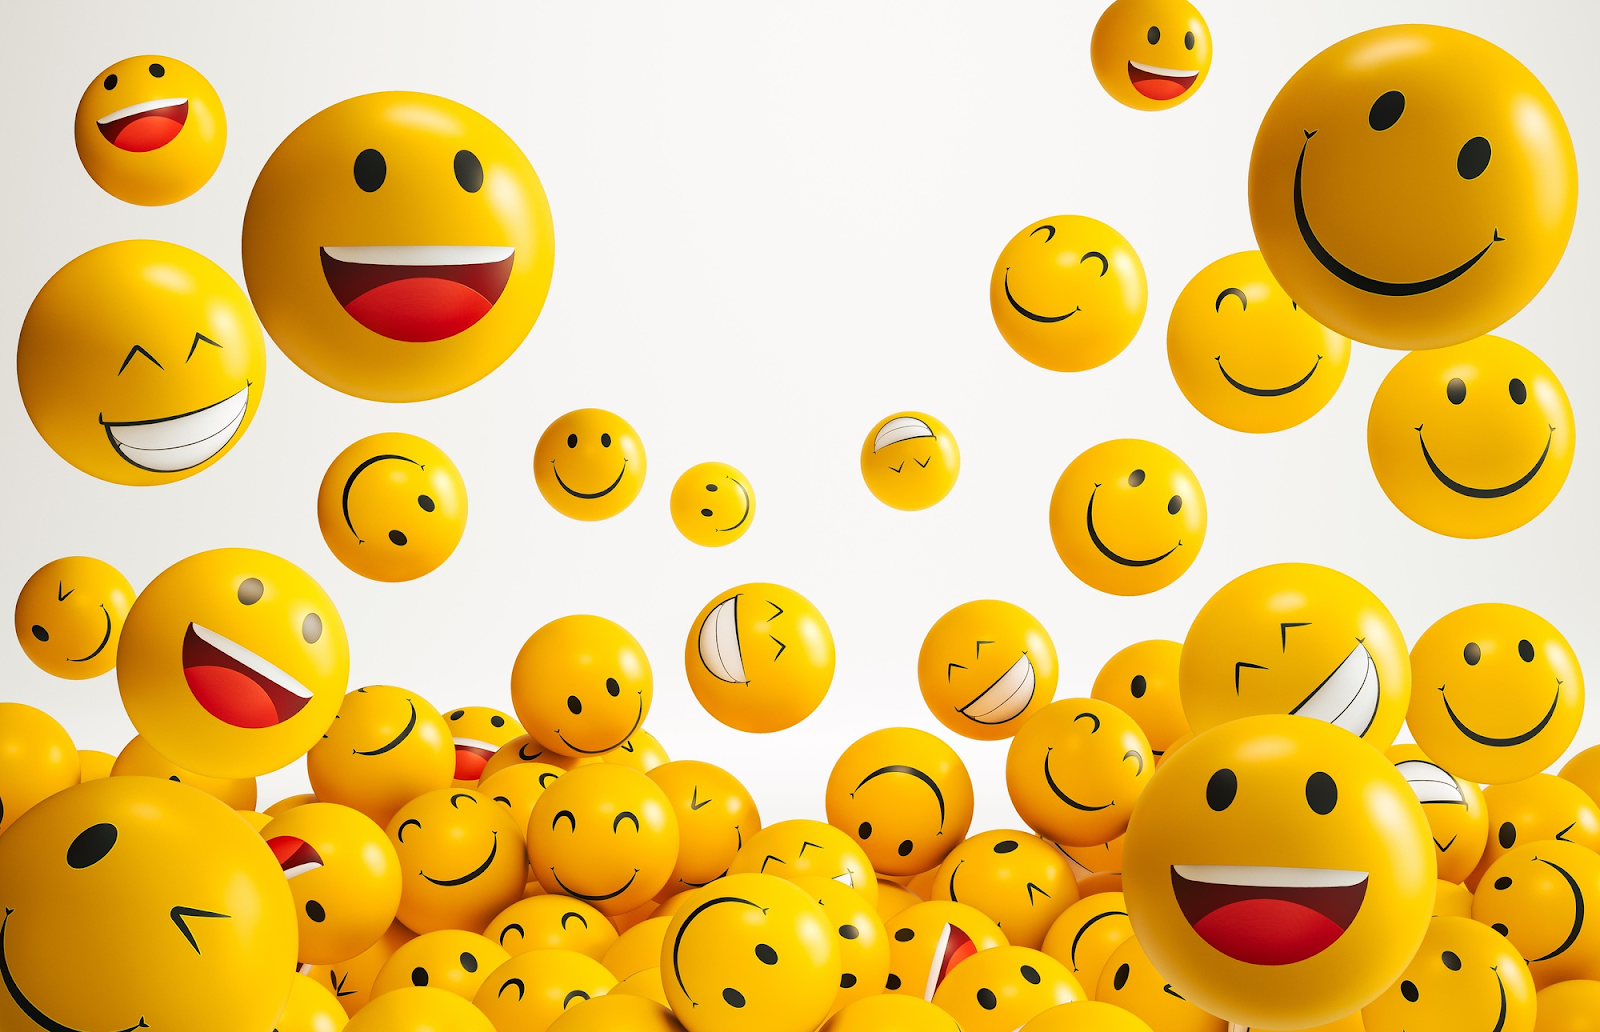 Différents emojis avec expression faciale